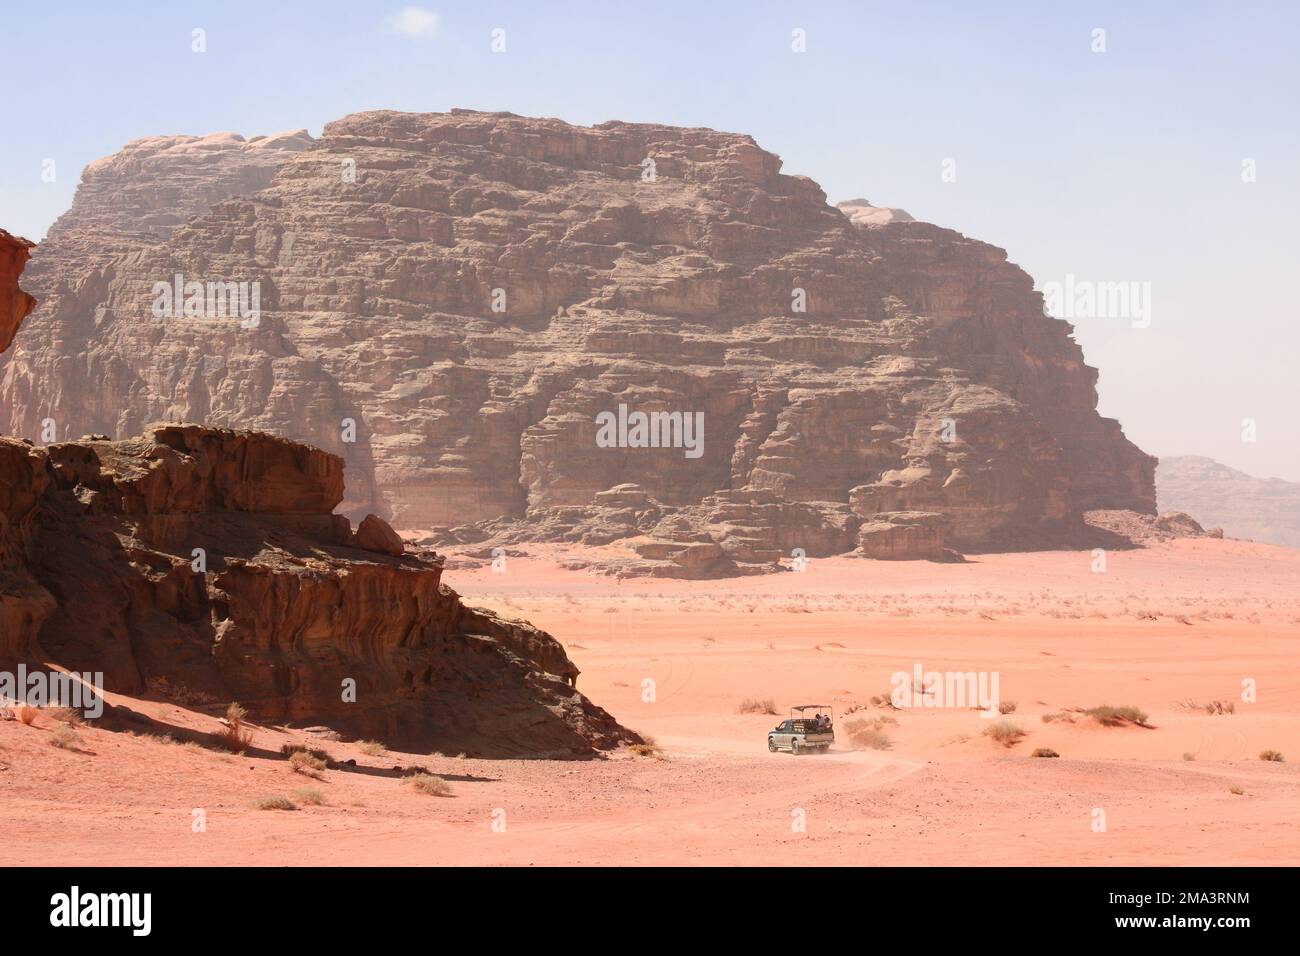 Safari en voiture dans le désert de Wadi Rum, Jordanie. Les touristes en voiture se rendent sur le sable au milieu des magnifiques rochers tout-terrain. Paysage désertique avec sable rouge et Mo rocailleux Banque D'Images